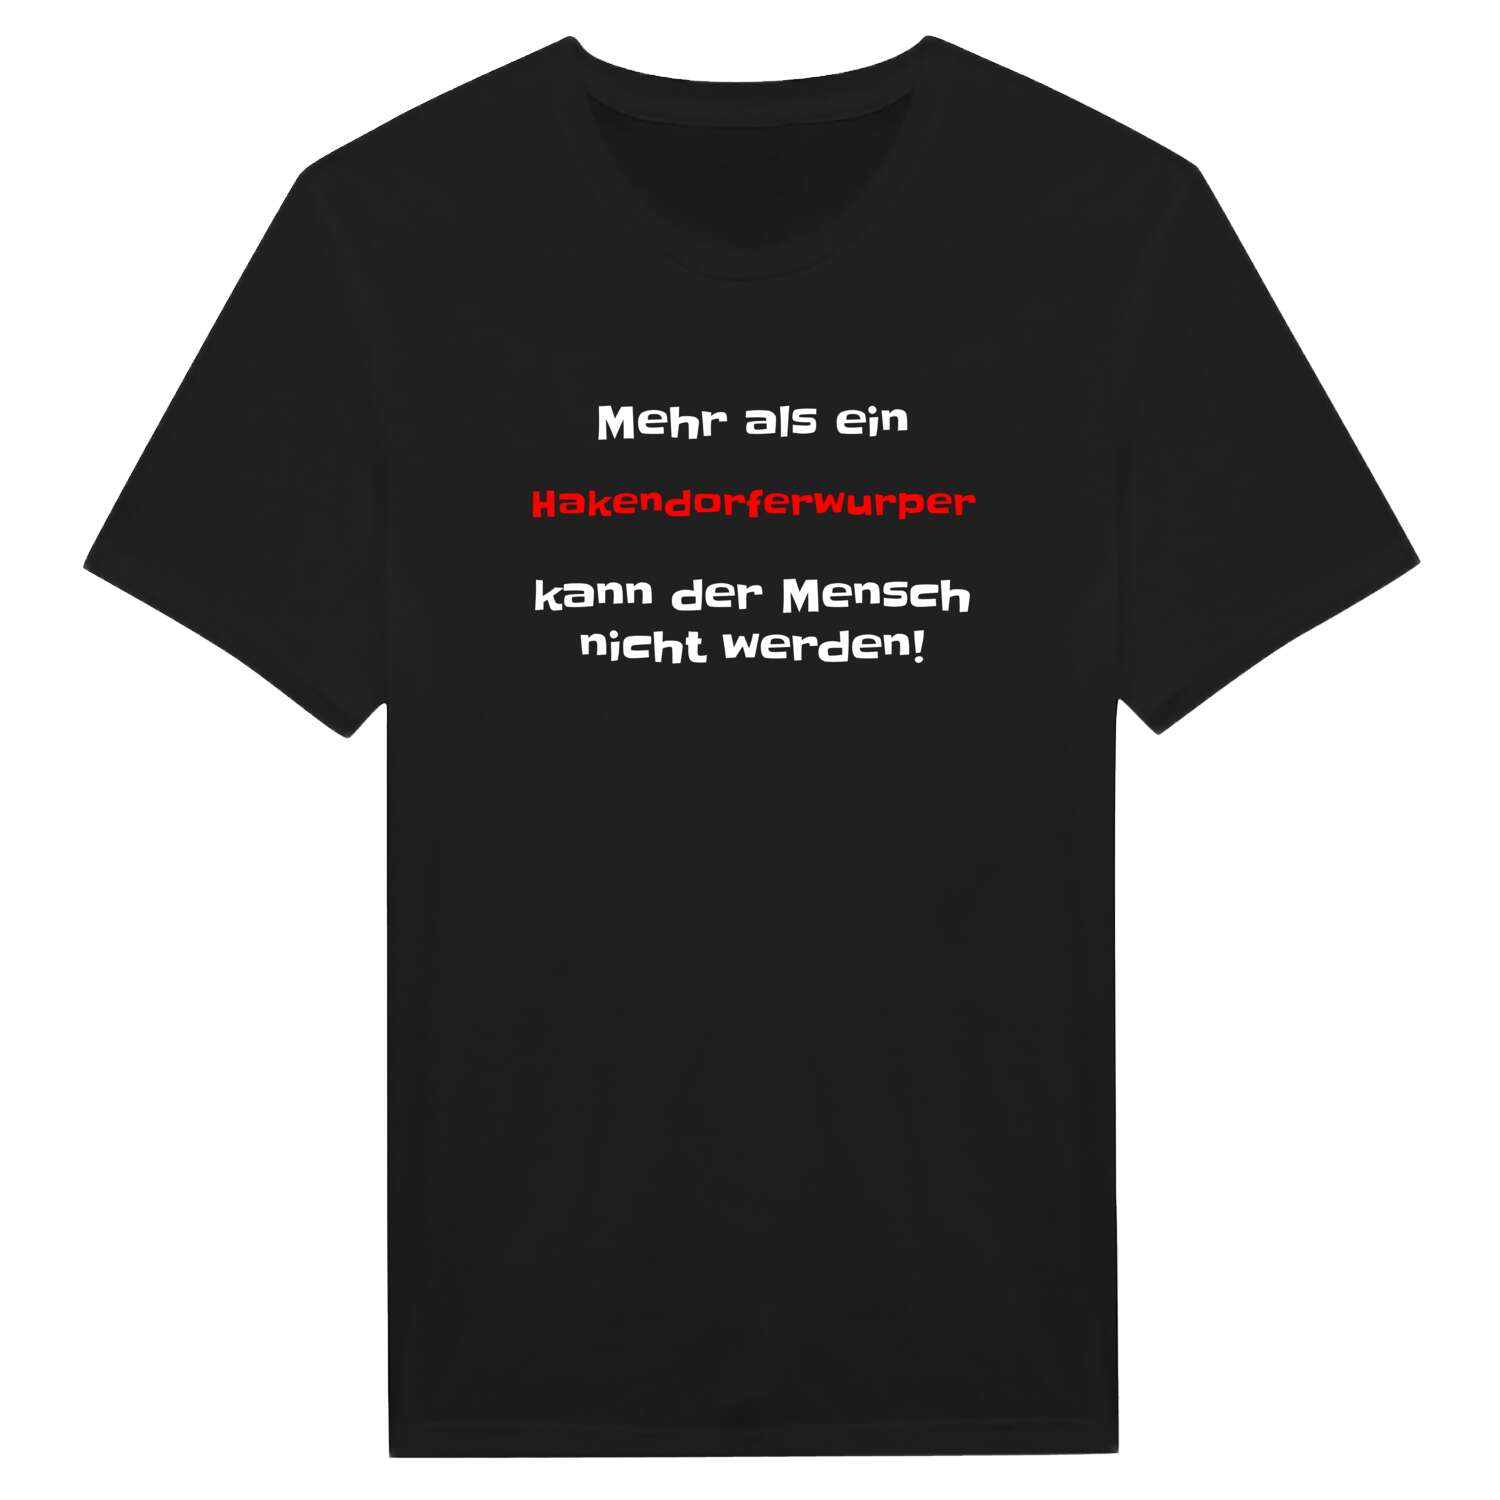 Hakendorferwurp T-Shirt »Mehr als ein«